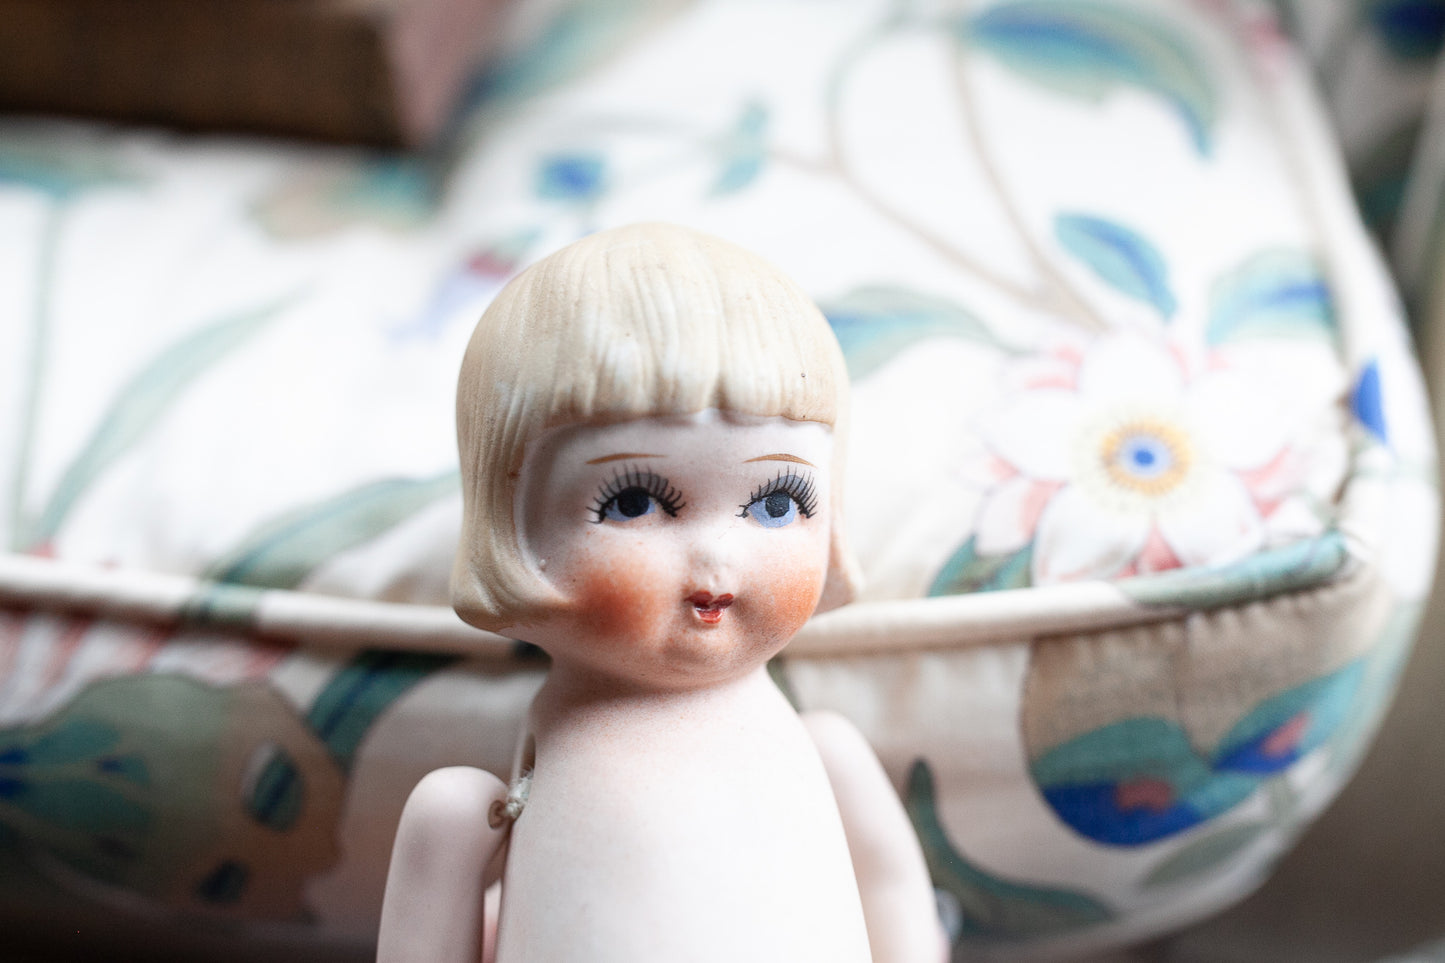 Vintage Bisque Doll - Made in Japan Kewpie Doll